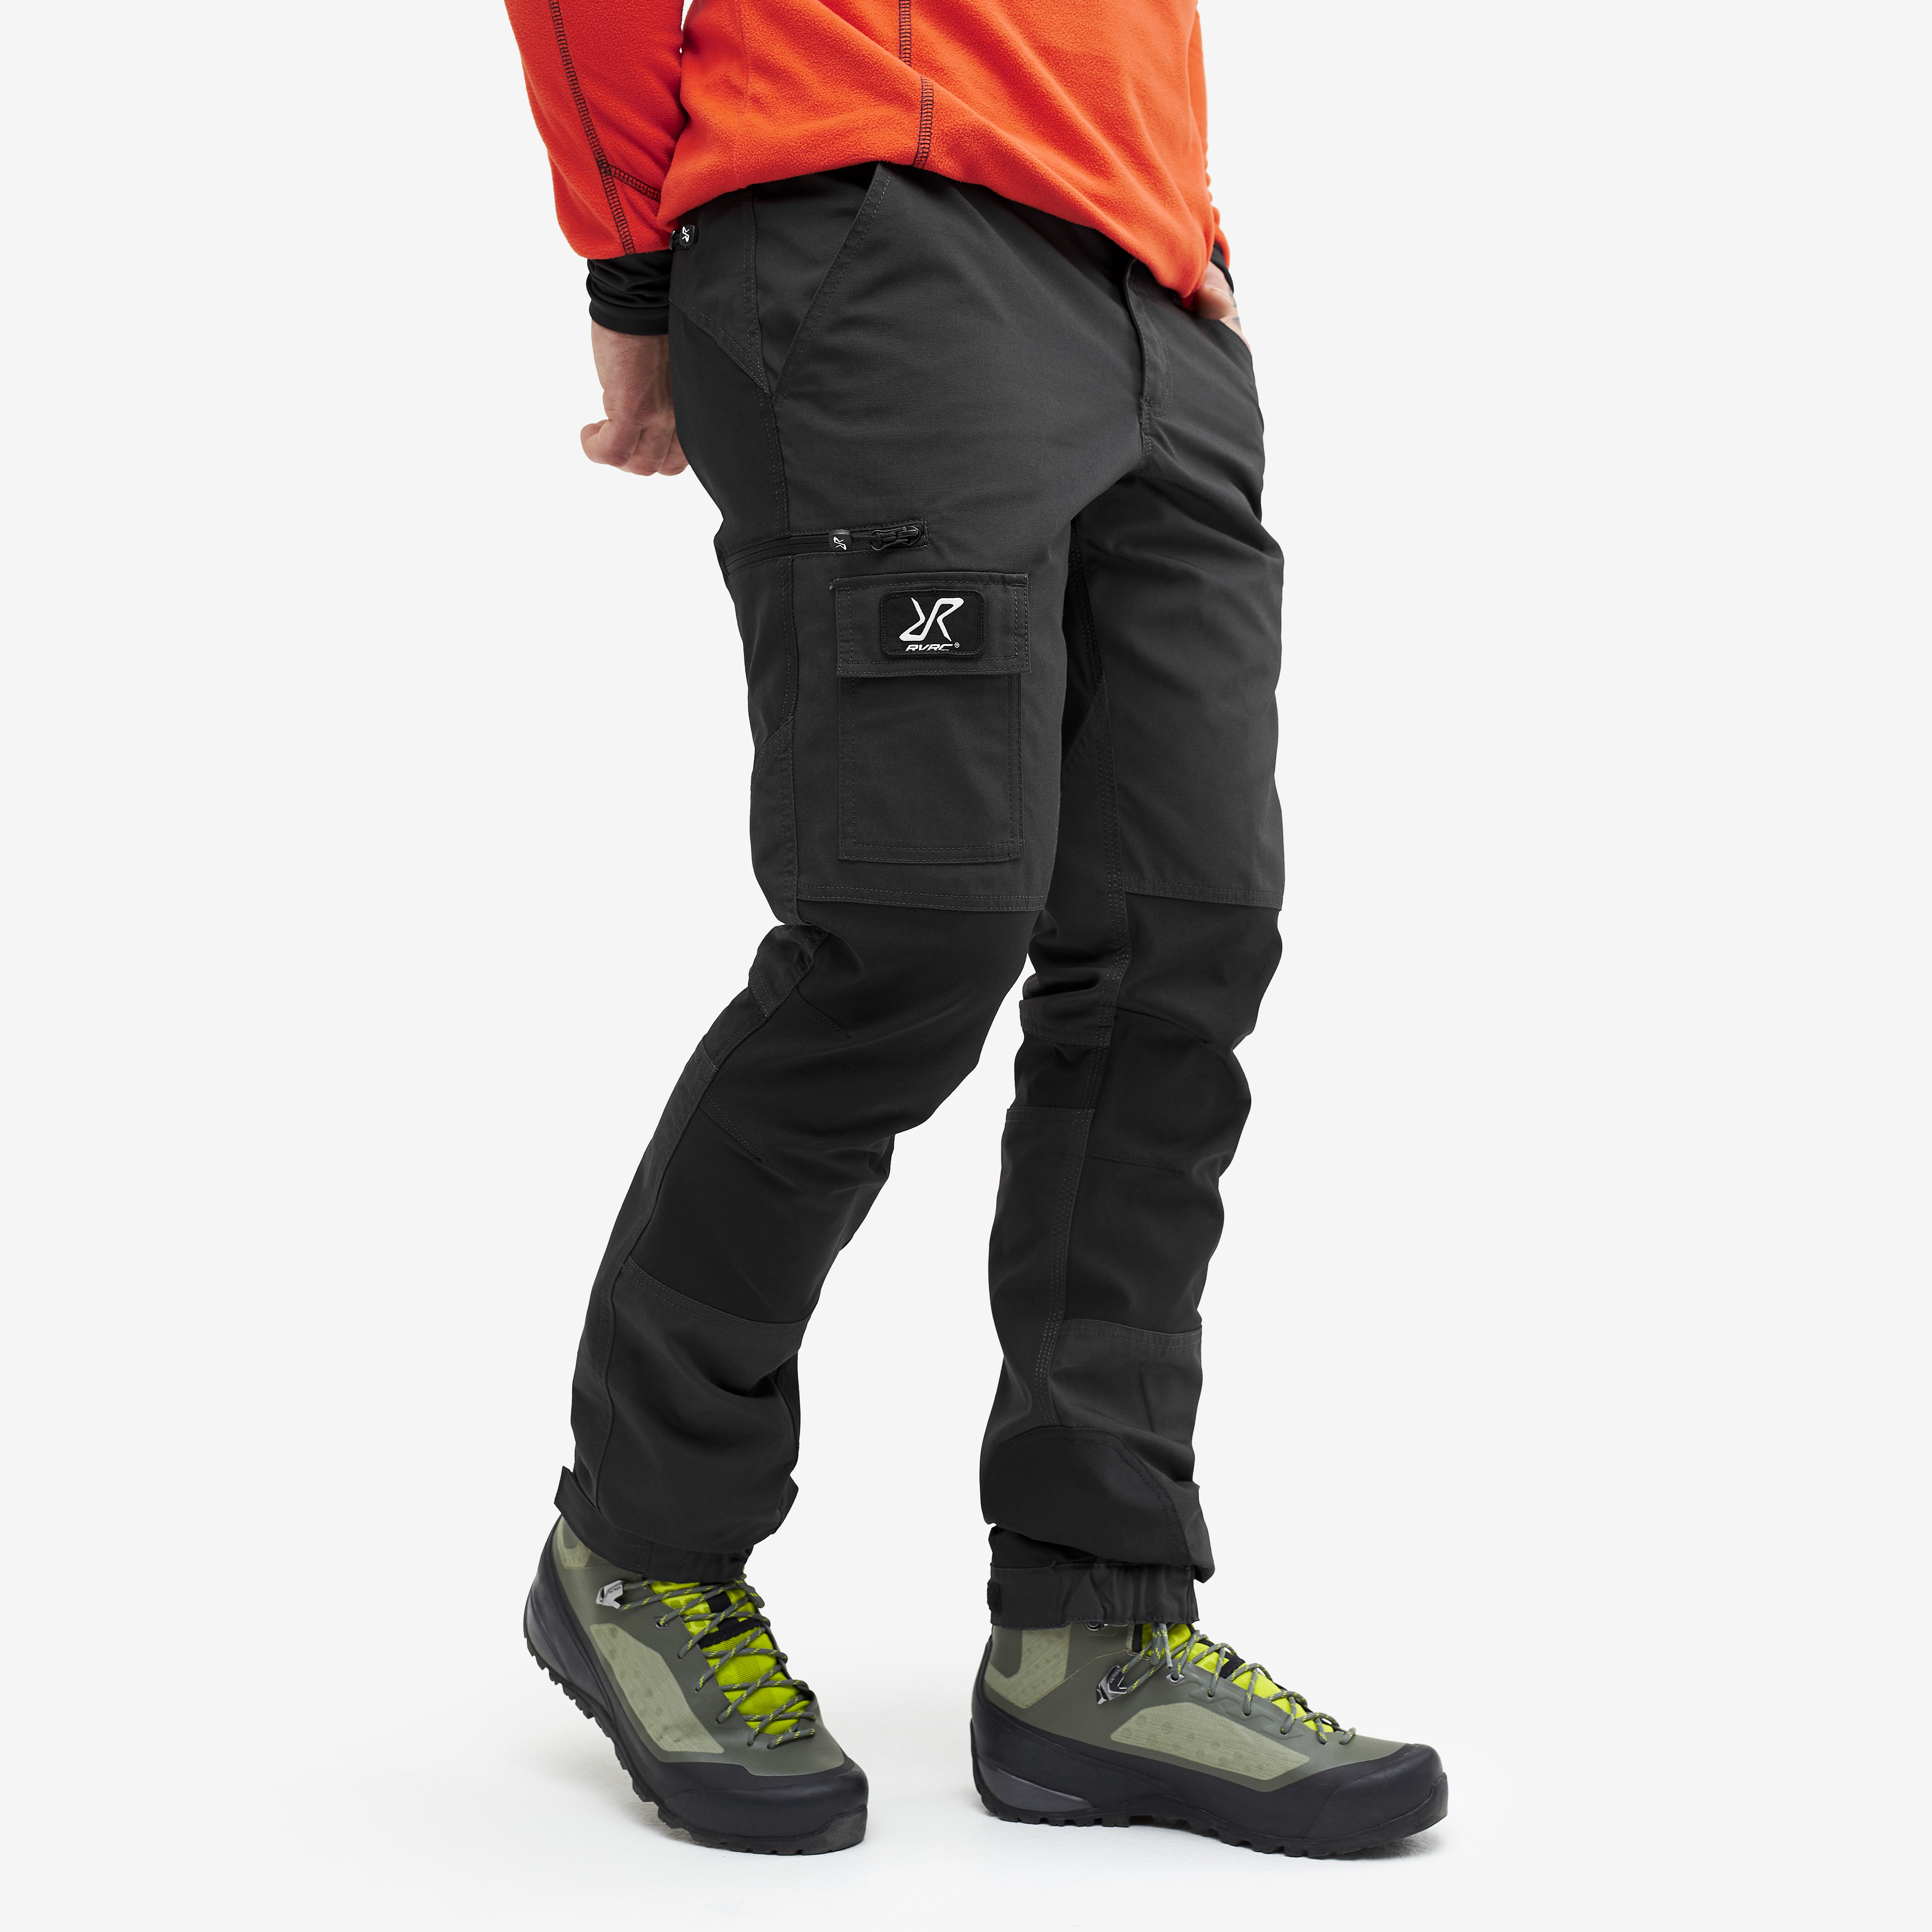 Nordwand outdoorové kalhoty pro muže v tmavě šedé barvě